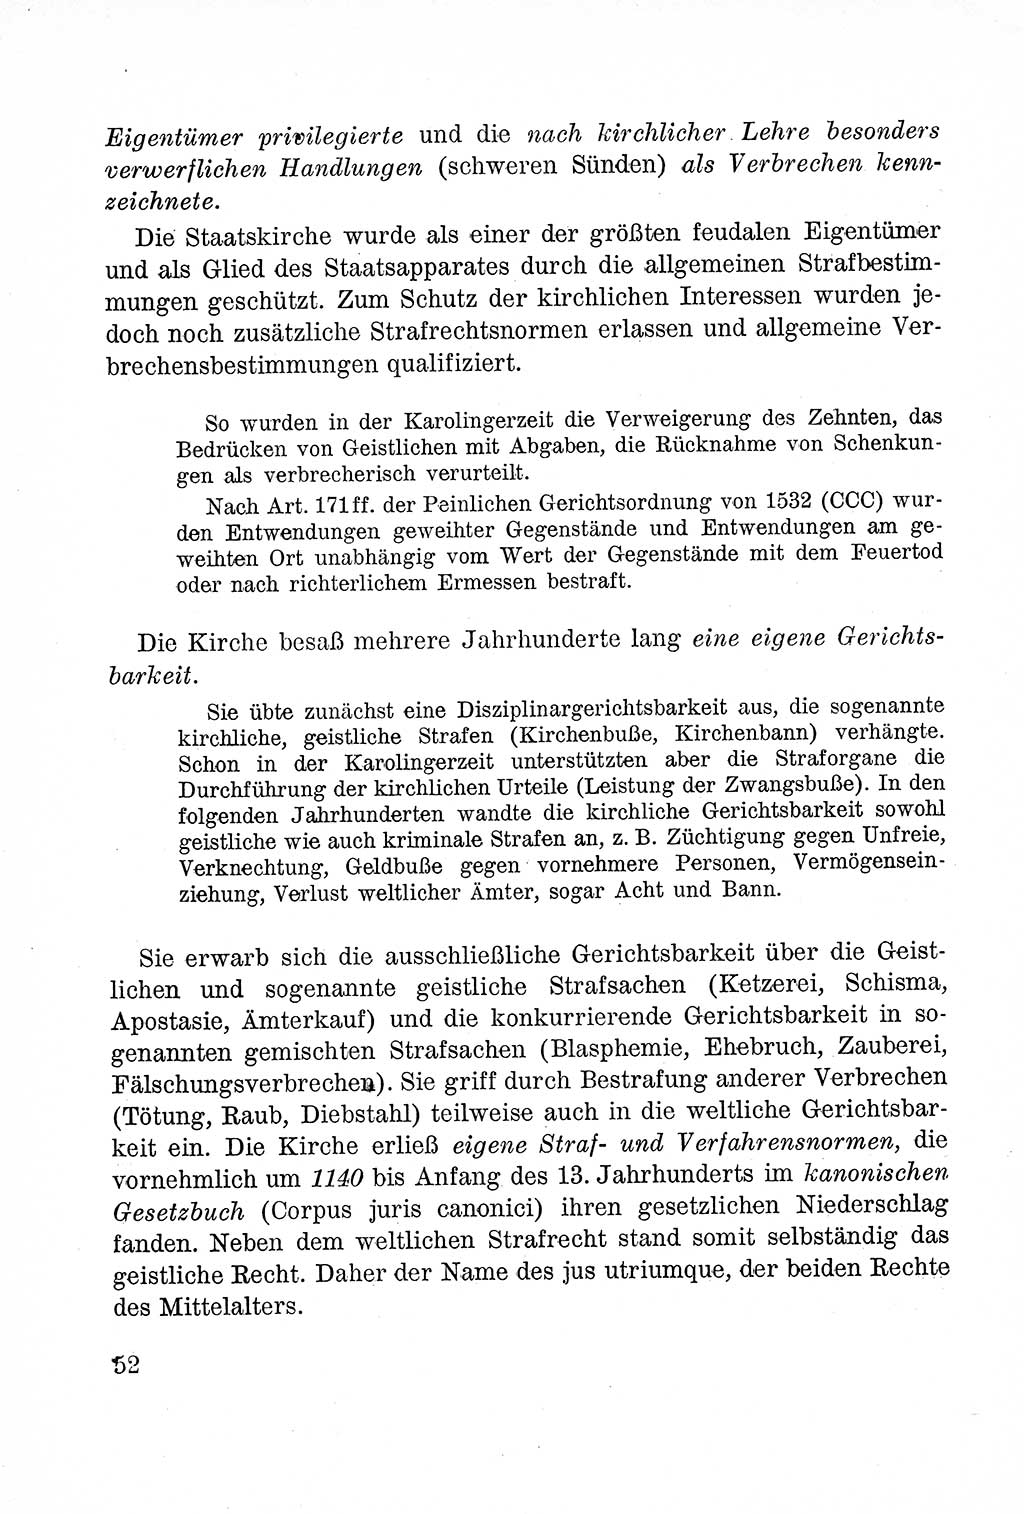 Lehrbuch des Strafrechts der Deutschen Demokratischen Republik (DDR), Allgemeiner Teil 1957, Seite 52 (Lb. Strafr. DDR AT 1957, S. 52)